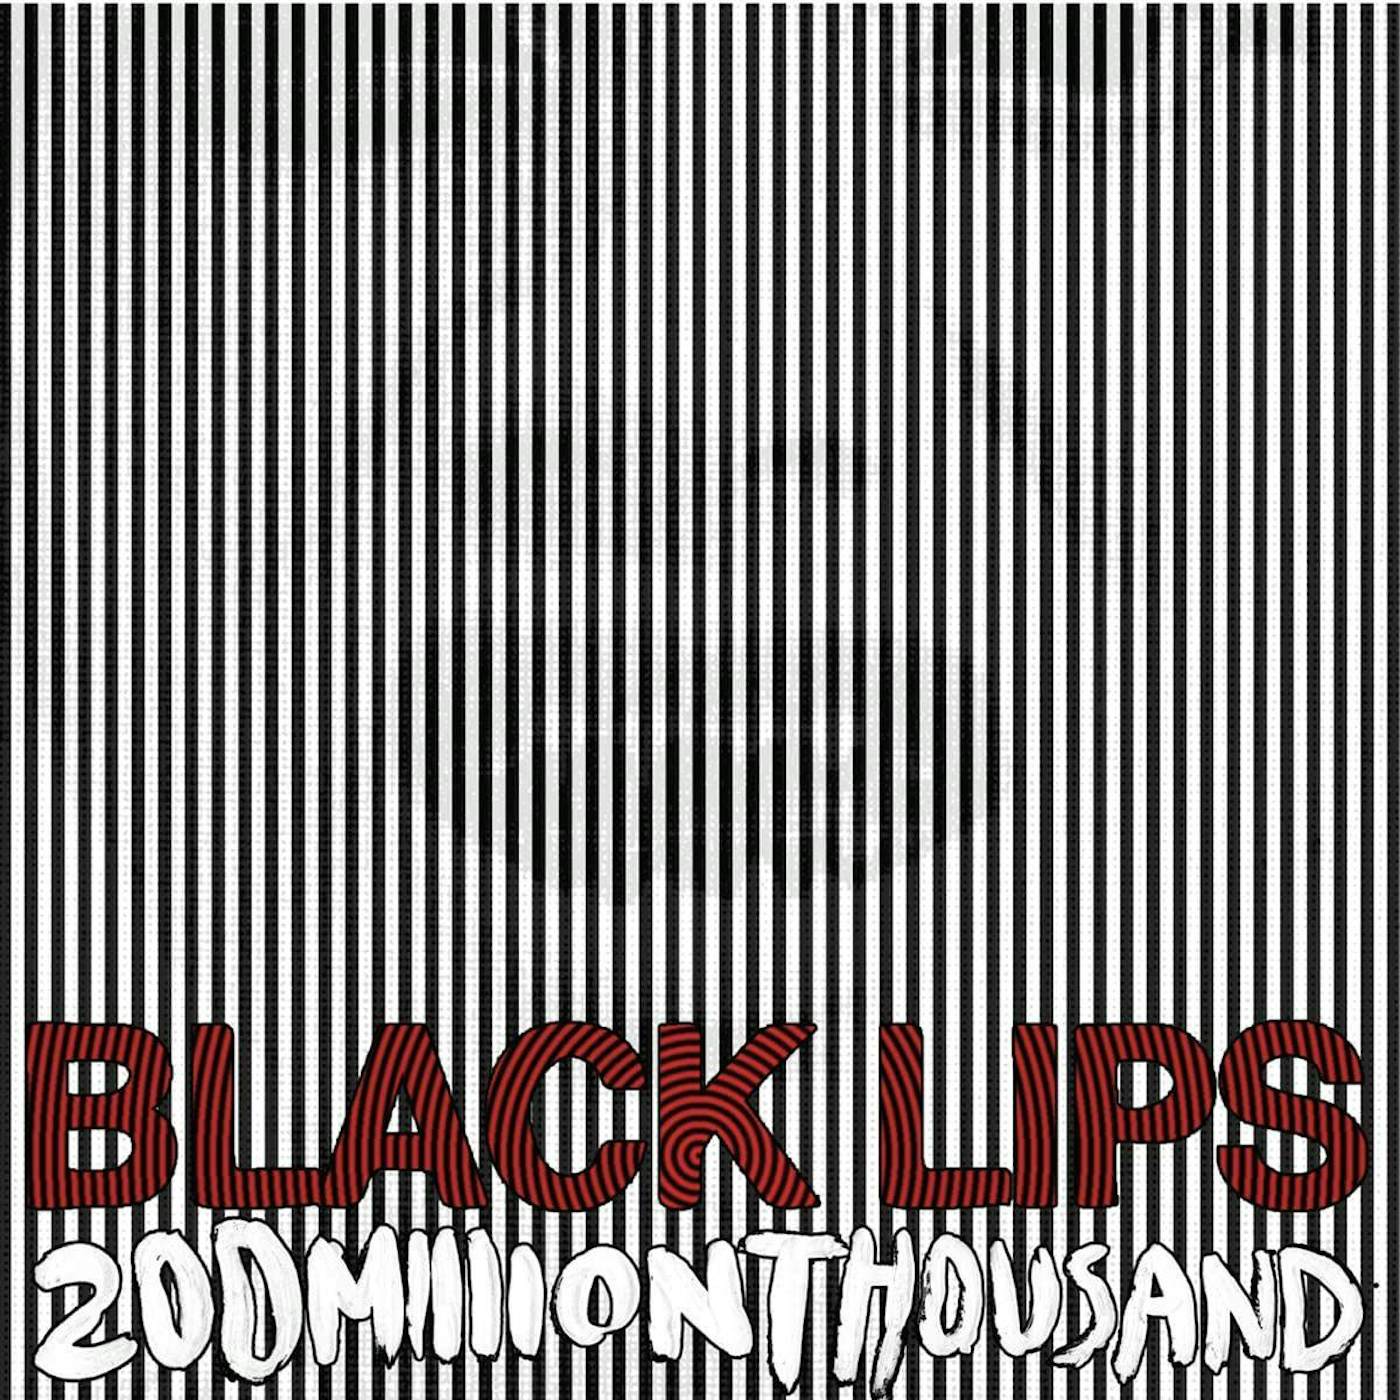 Black Lips 200 Million Thousand (White Vinyl Record)